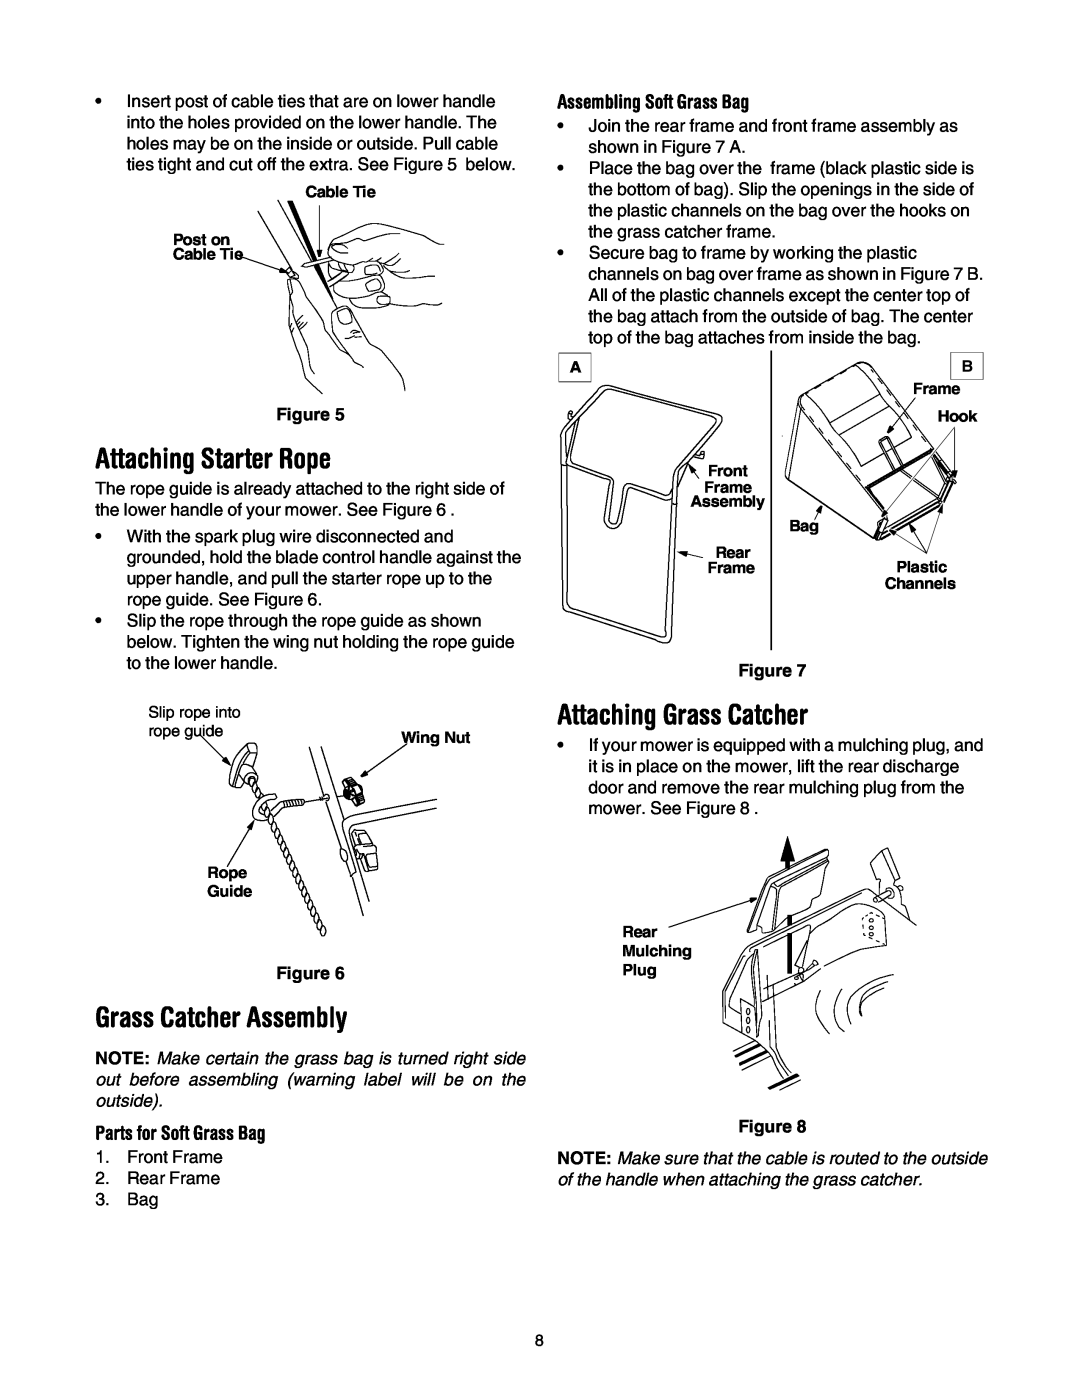 MTD 435 manual Attaching Starter Rope, Attaching Grass Catcher, Grass Catcher Assembly, Assembling Soft Grass Bag 